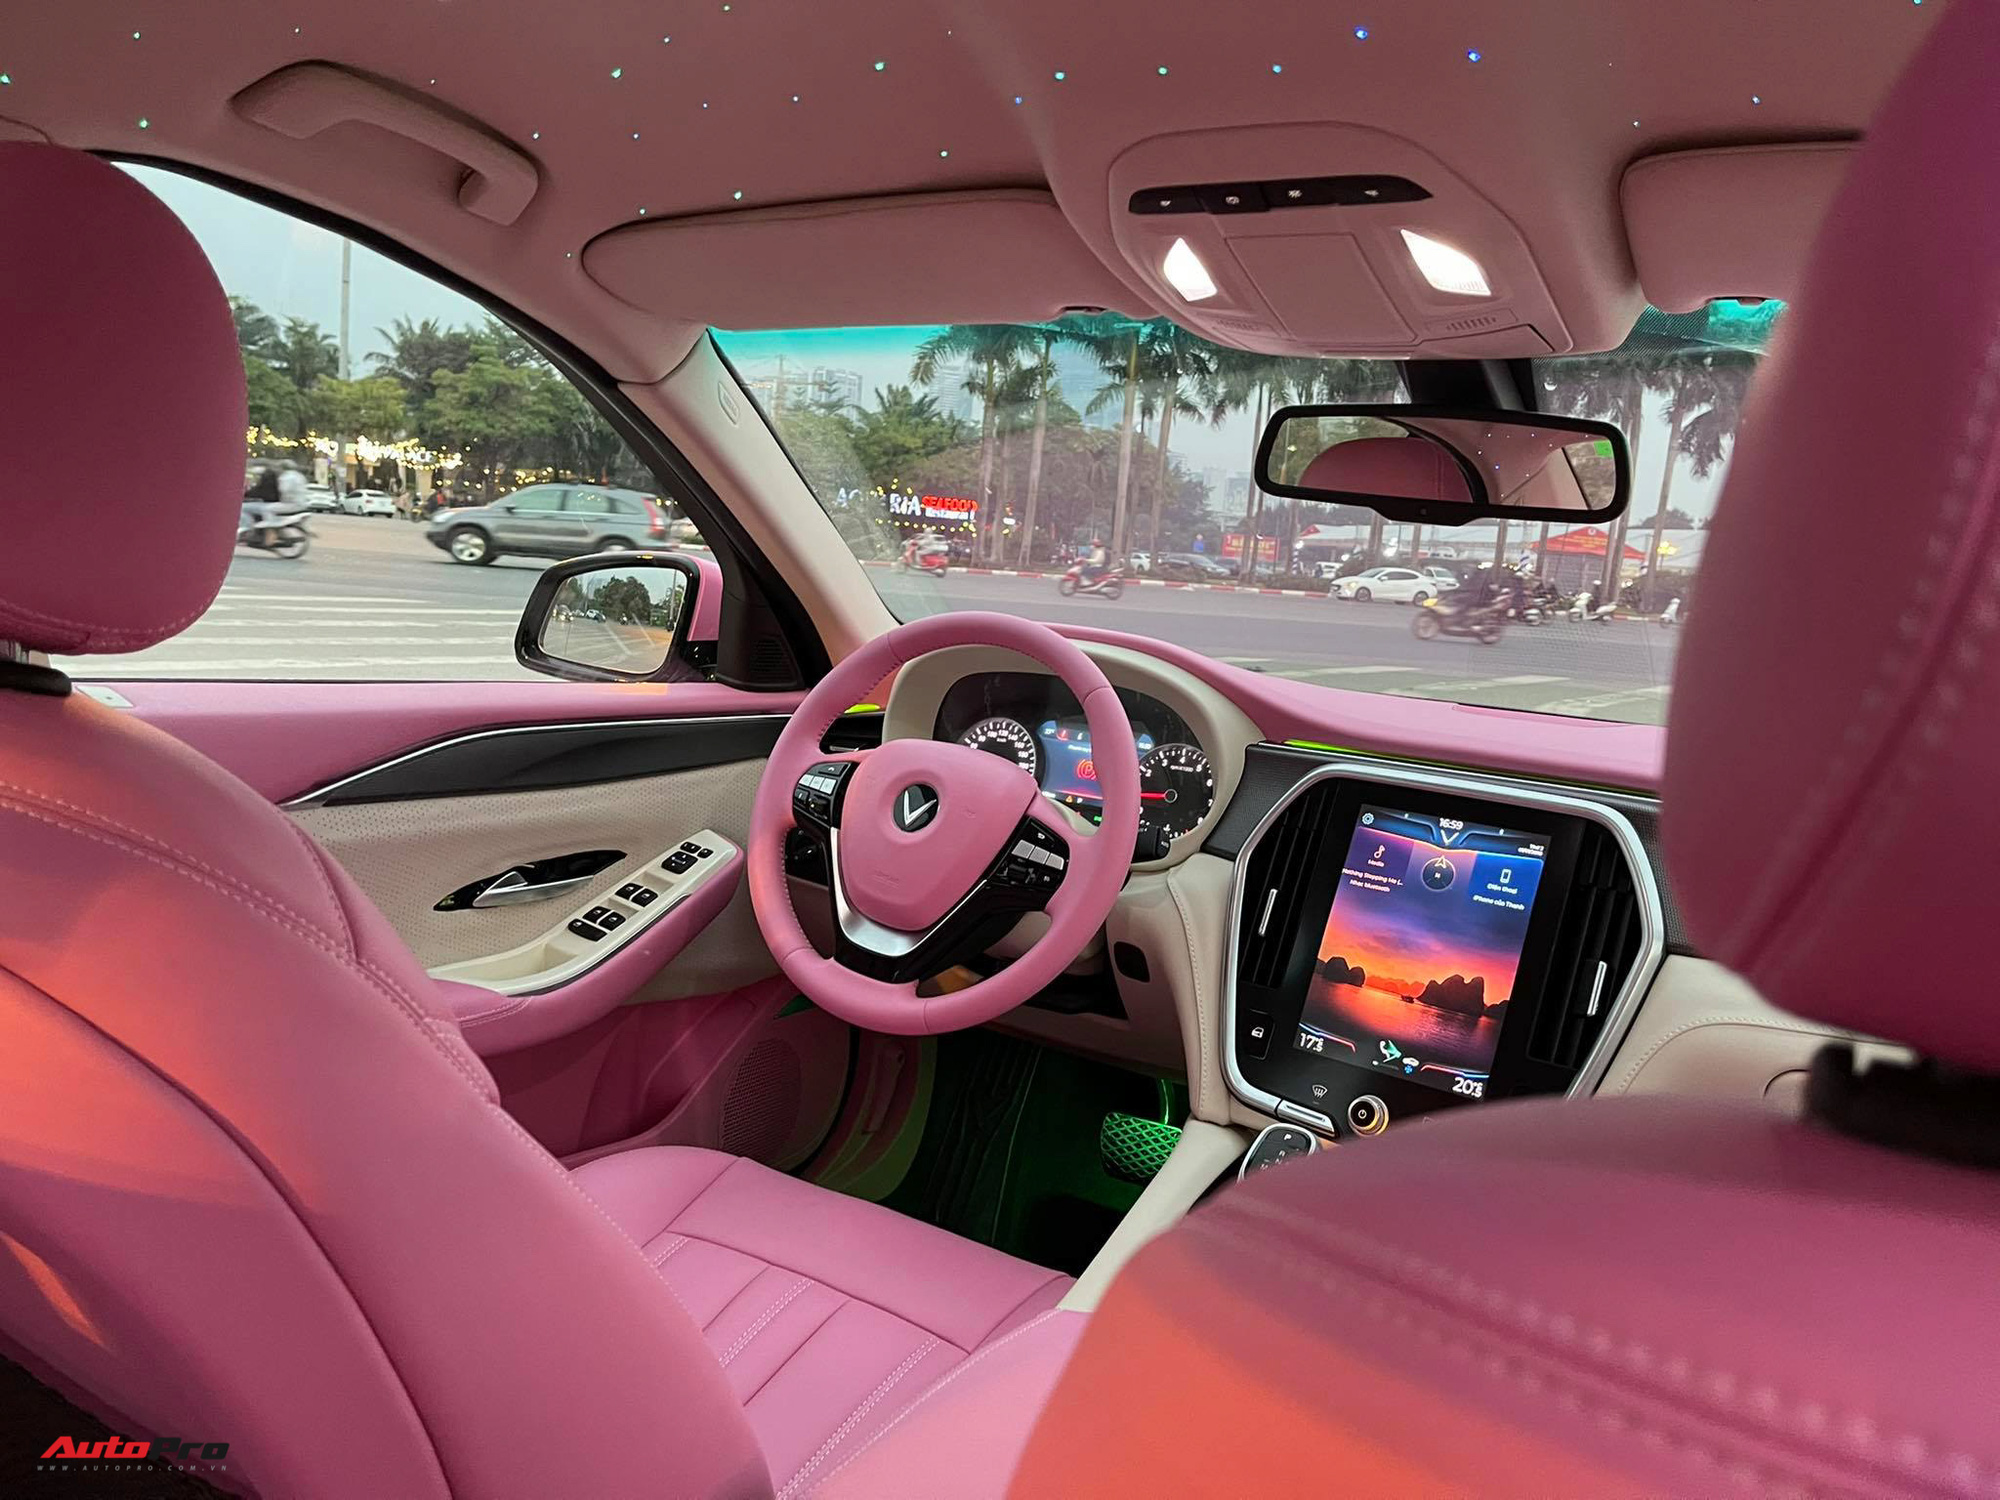 Mua ngay xe màu hồng nếu bạn không muốn xe mình bị mất giá  Xe 360